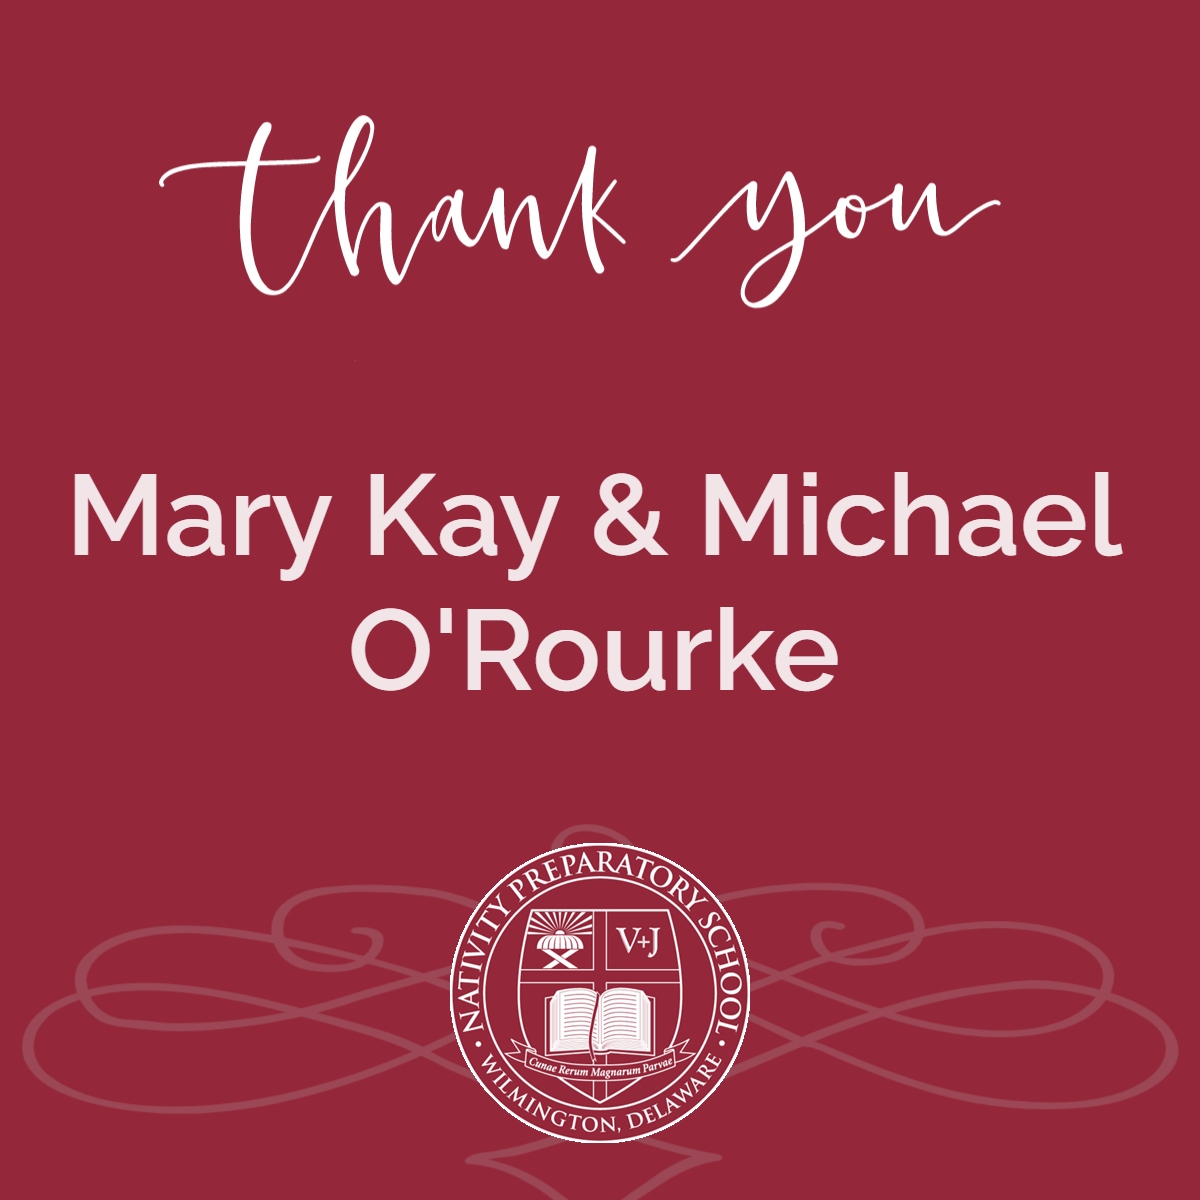 Mary Kay & Michael O'Rourke